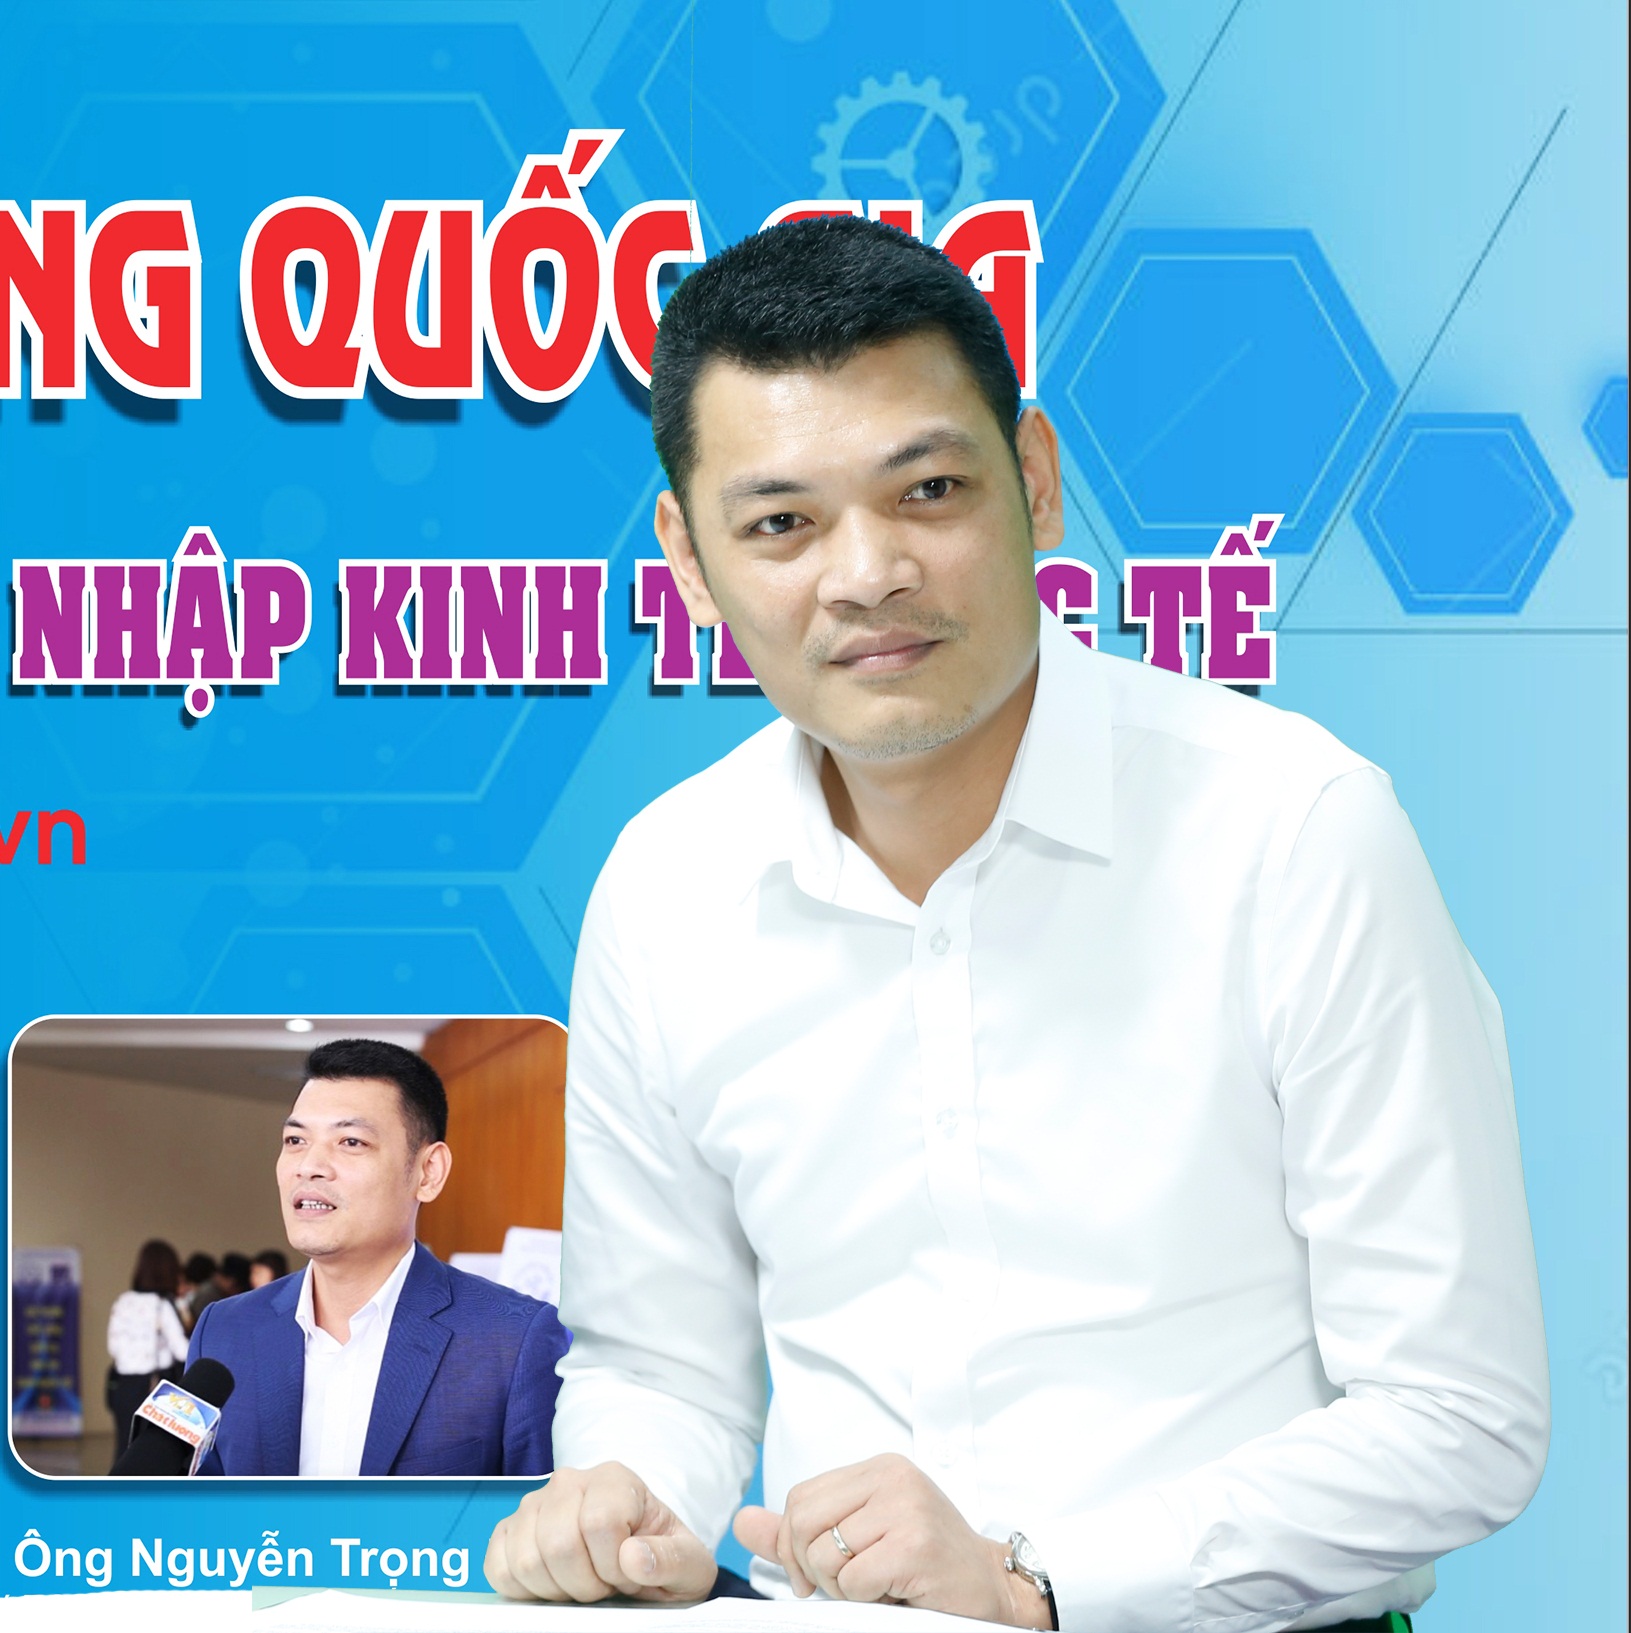   Ông Nguyễn Trọng Đắc nhận được nhiều câu hỏi của bạn đọc quan tâm gửi về chương trình